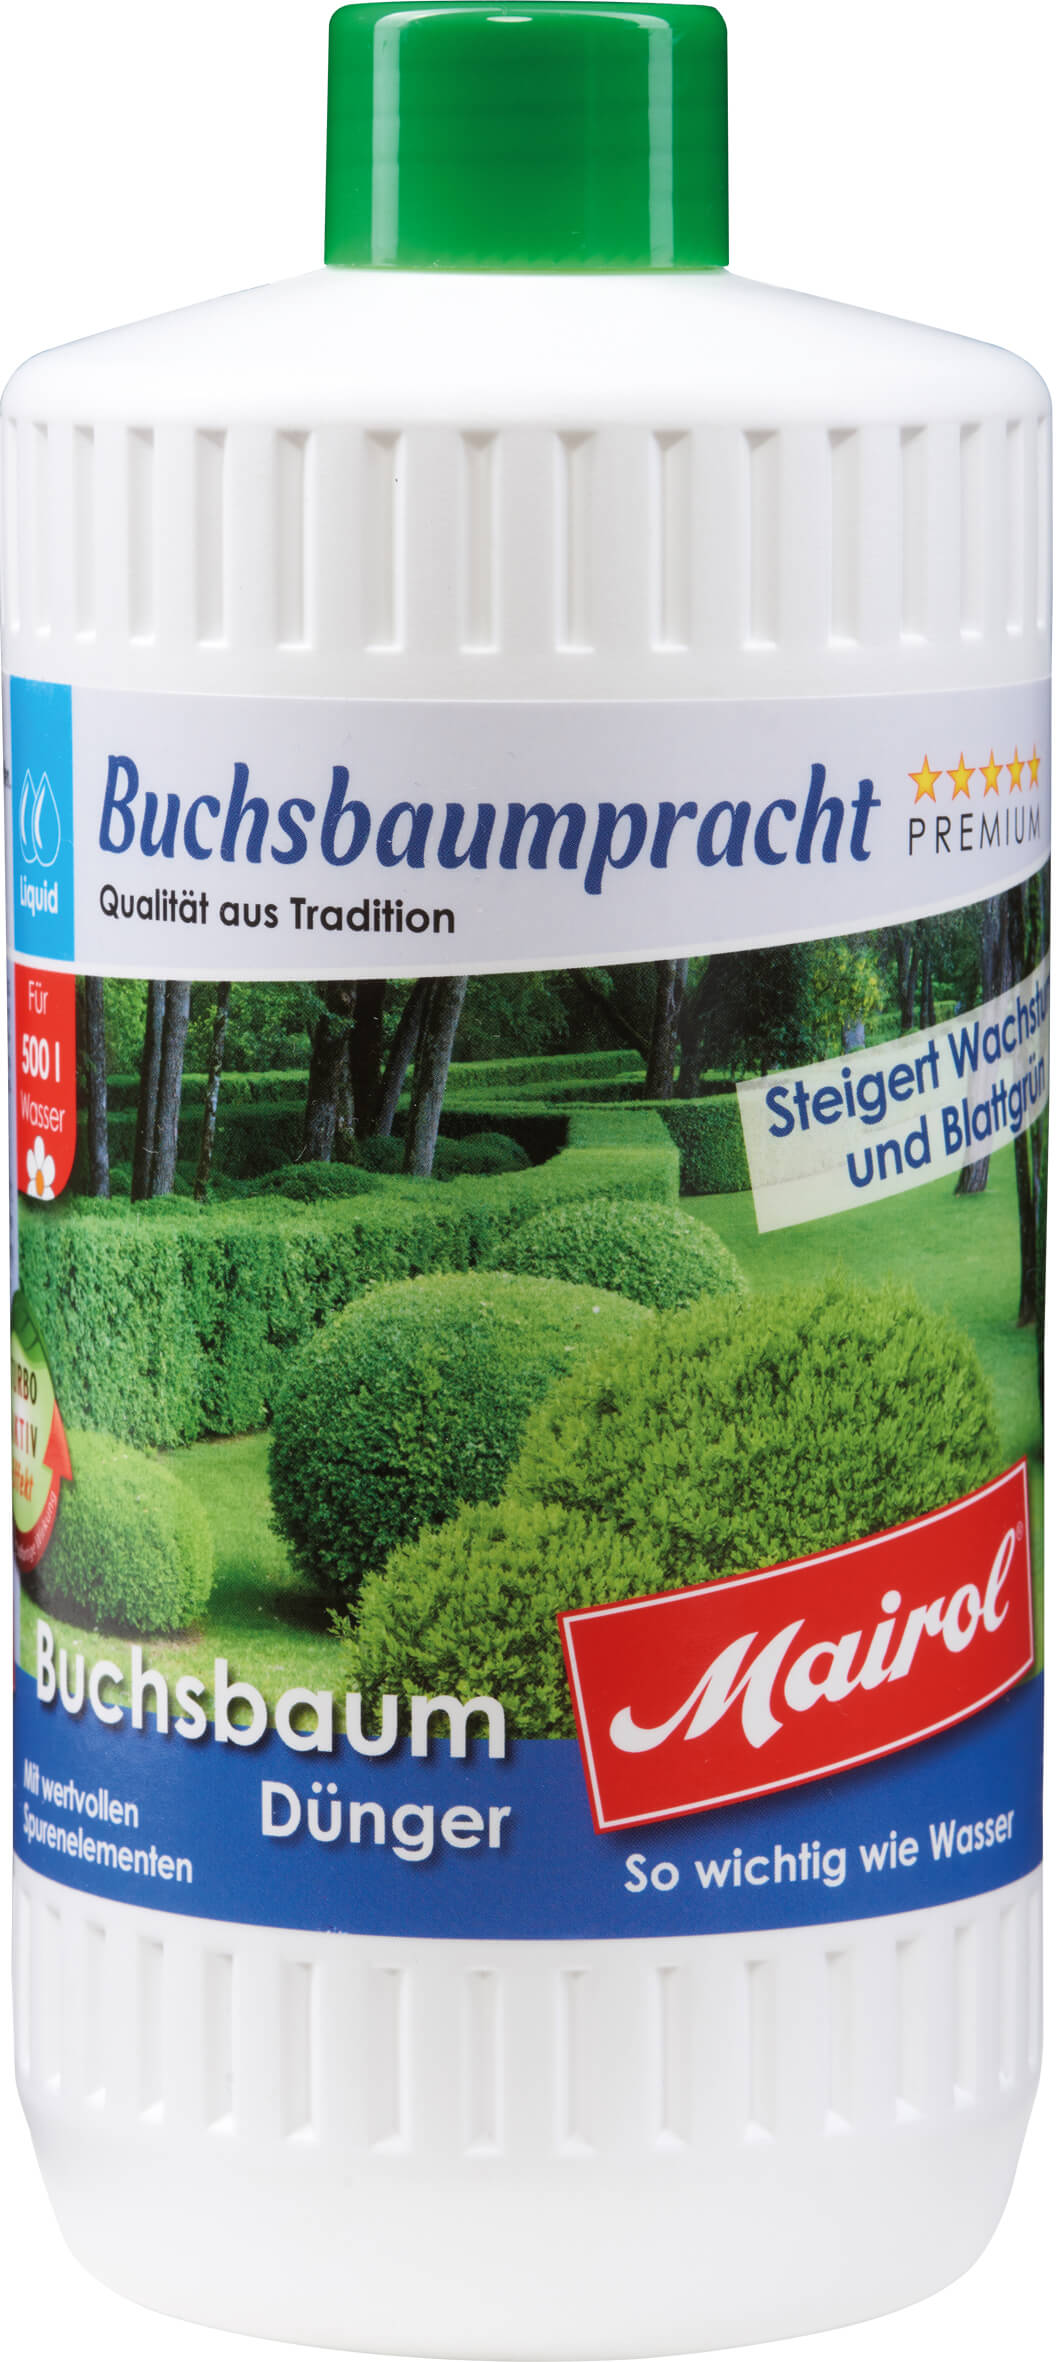 Buchsbaumdünger Flüssig MAIROL, 1 Liter Flasche reicht für 500 Liter Gießwasser